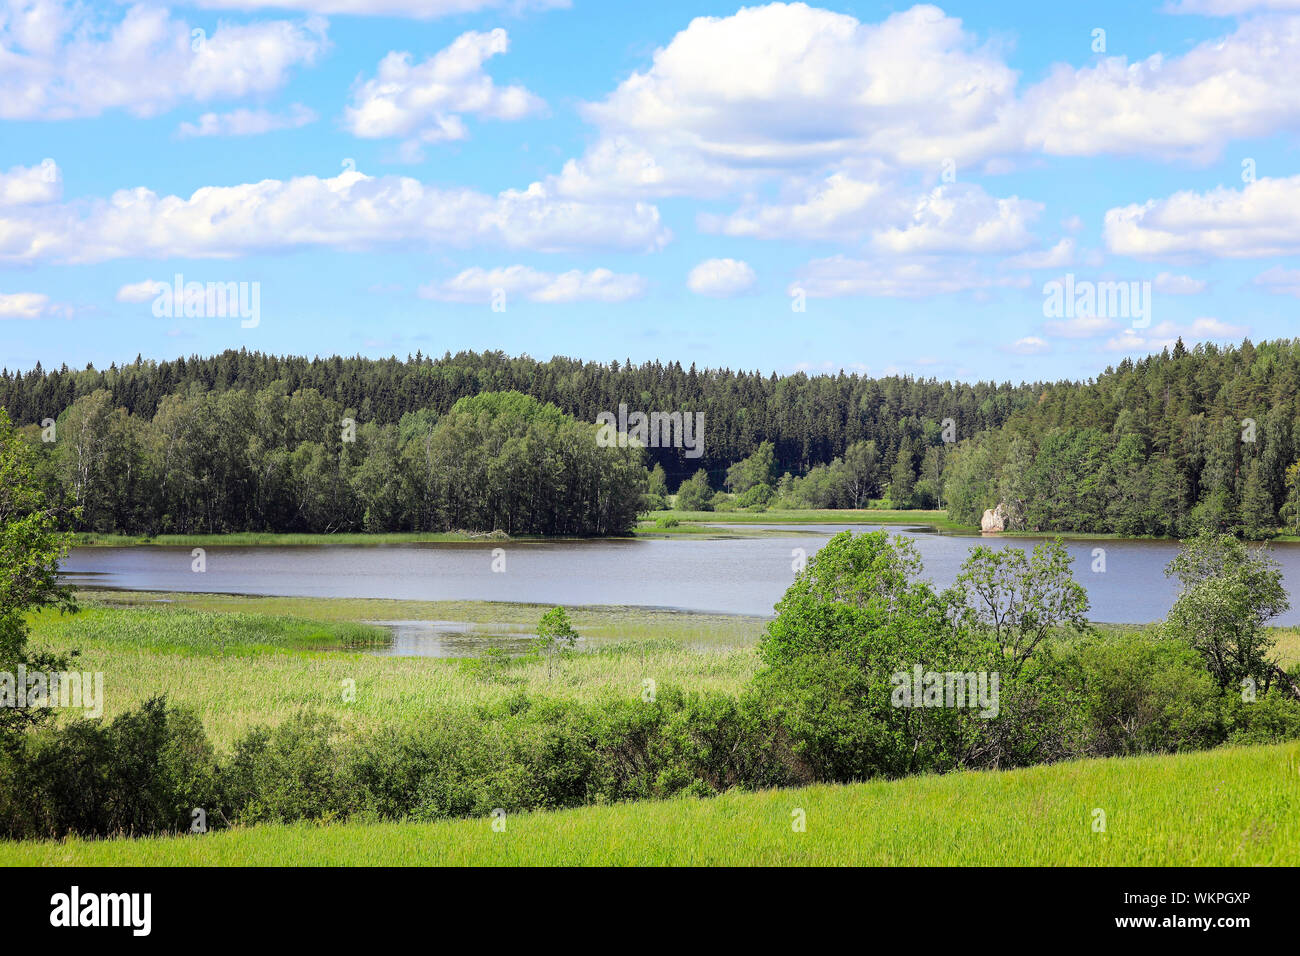 Rural lake avec la forêt, de l'arbuste et de vertes prairies sur une belle journée d'été avec ciel bleu et nuages Fairweather. Juin 2019. Hirsijärvi le lac, Salo, F Banque D'Images